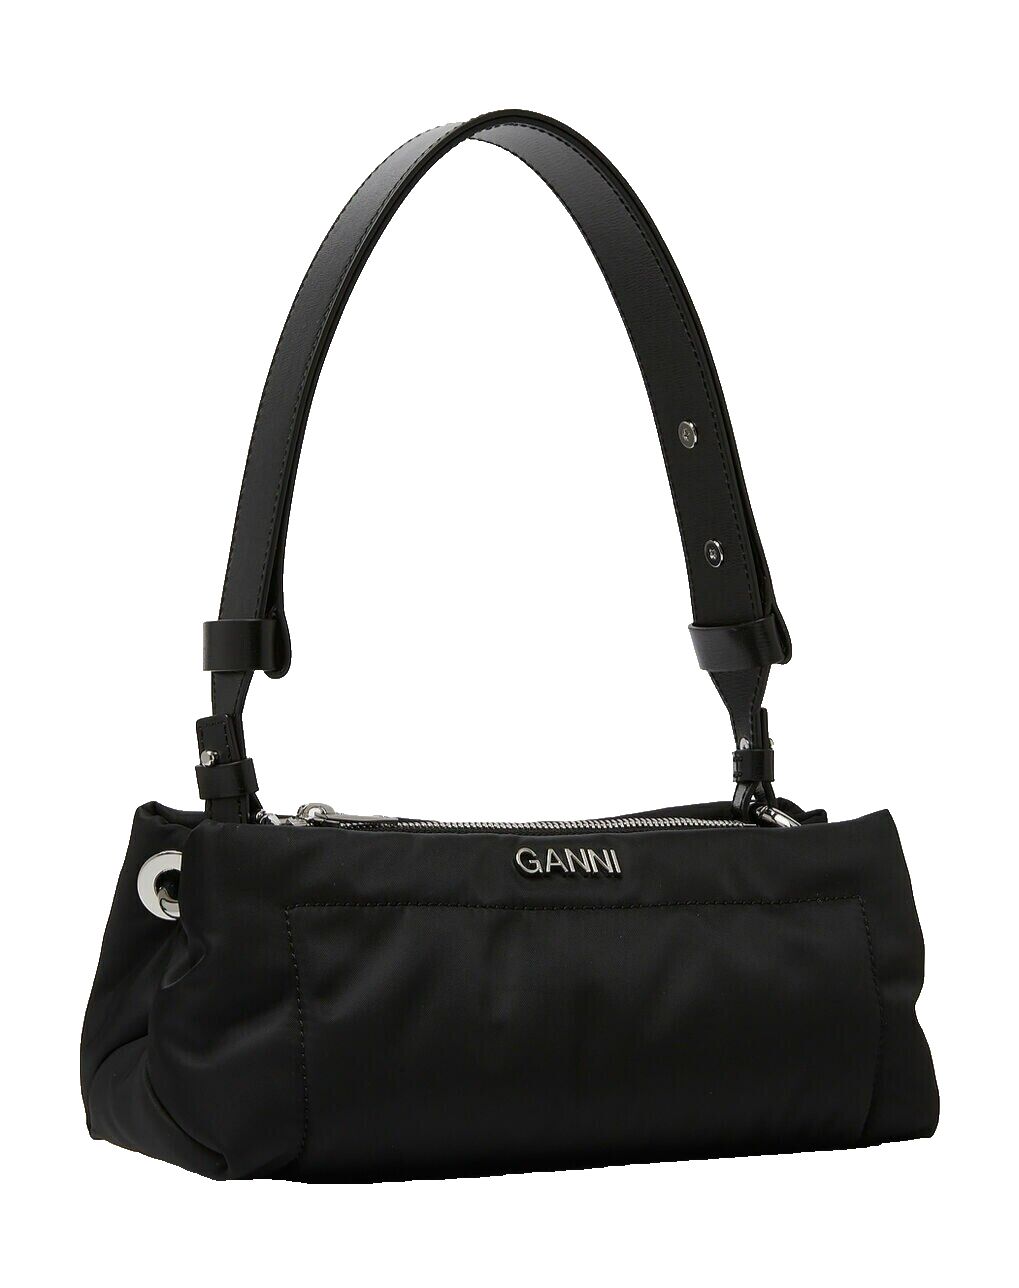 GANNI Pillow Baguette Shoulder Bag in Black - MSRP $295.00 | eBay UK